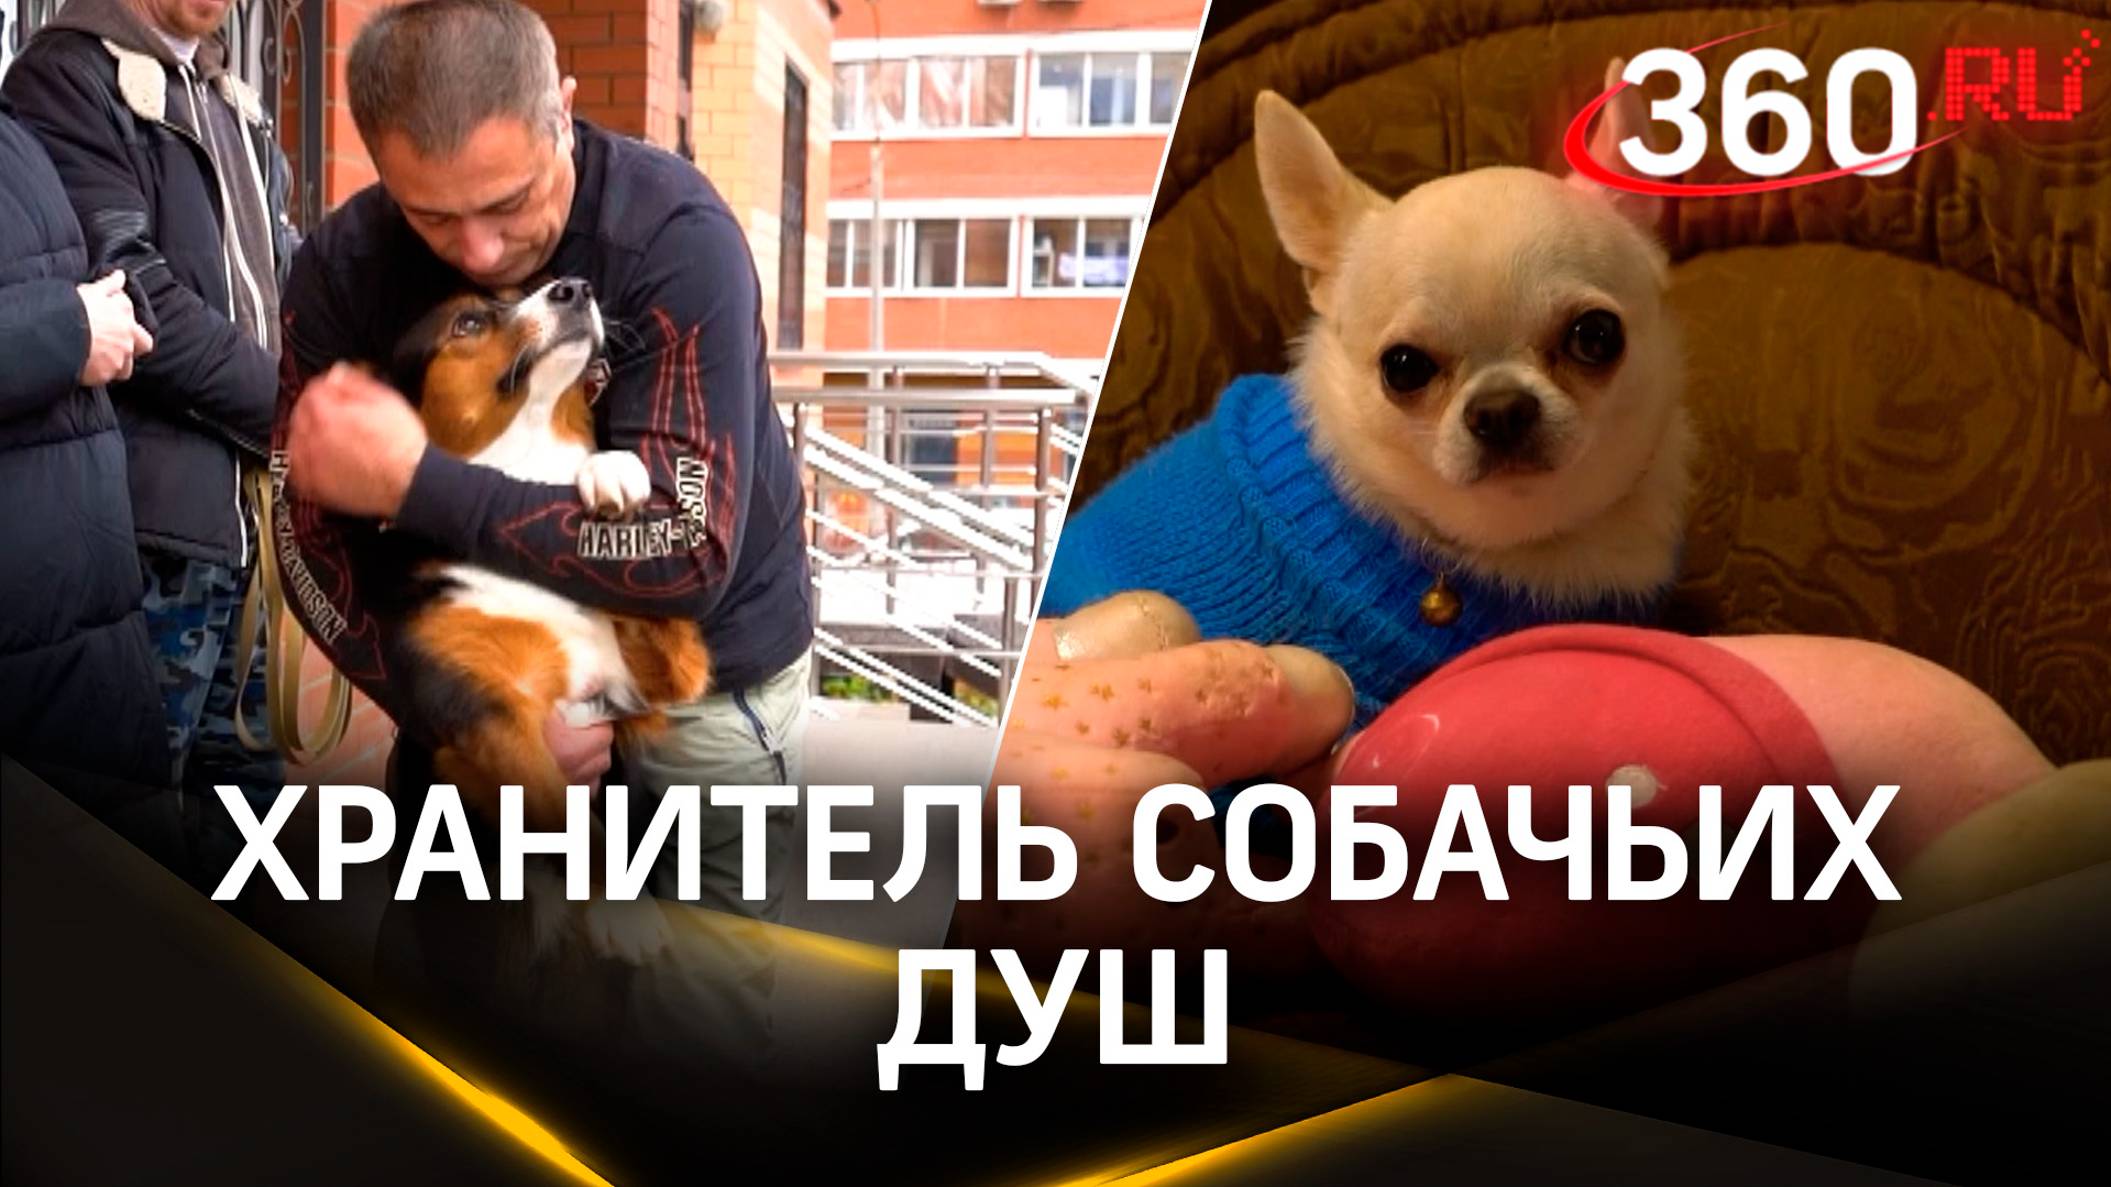 Как успешный бизнесмен Игорь Айрапетян помогает бездомным животным